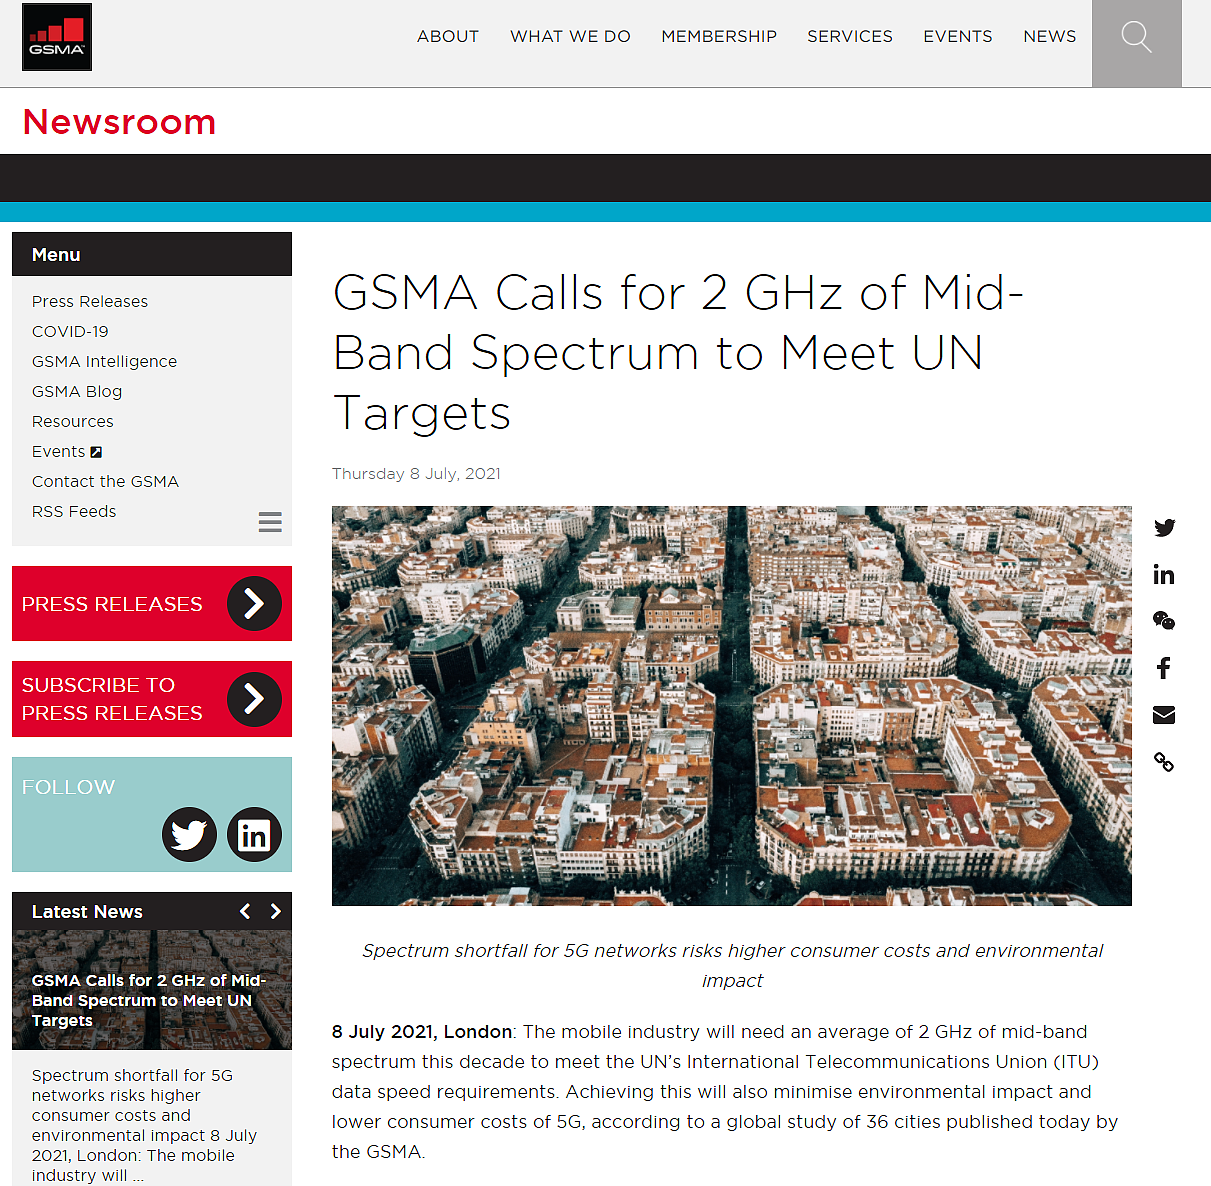 GSMA 呼吁开放 2GHz 中频频谱，以降低成本、满足联合国目标 - 1